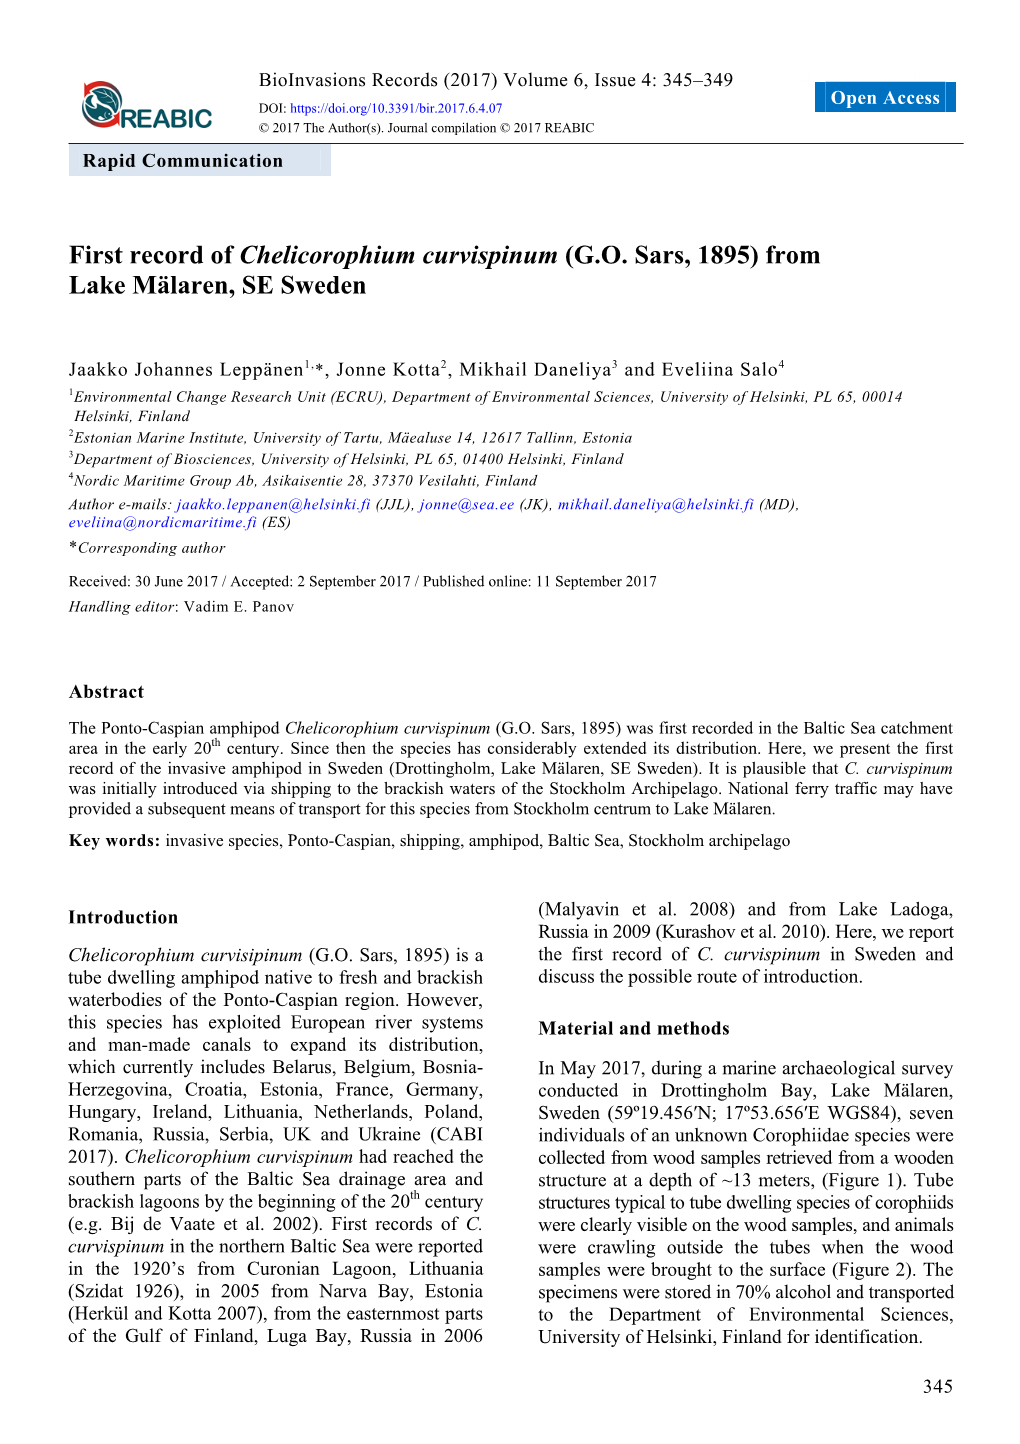 First Record of Chelicorophium Curvispinum (GO Sars